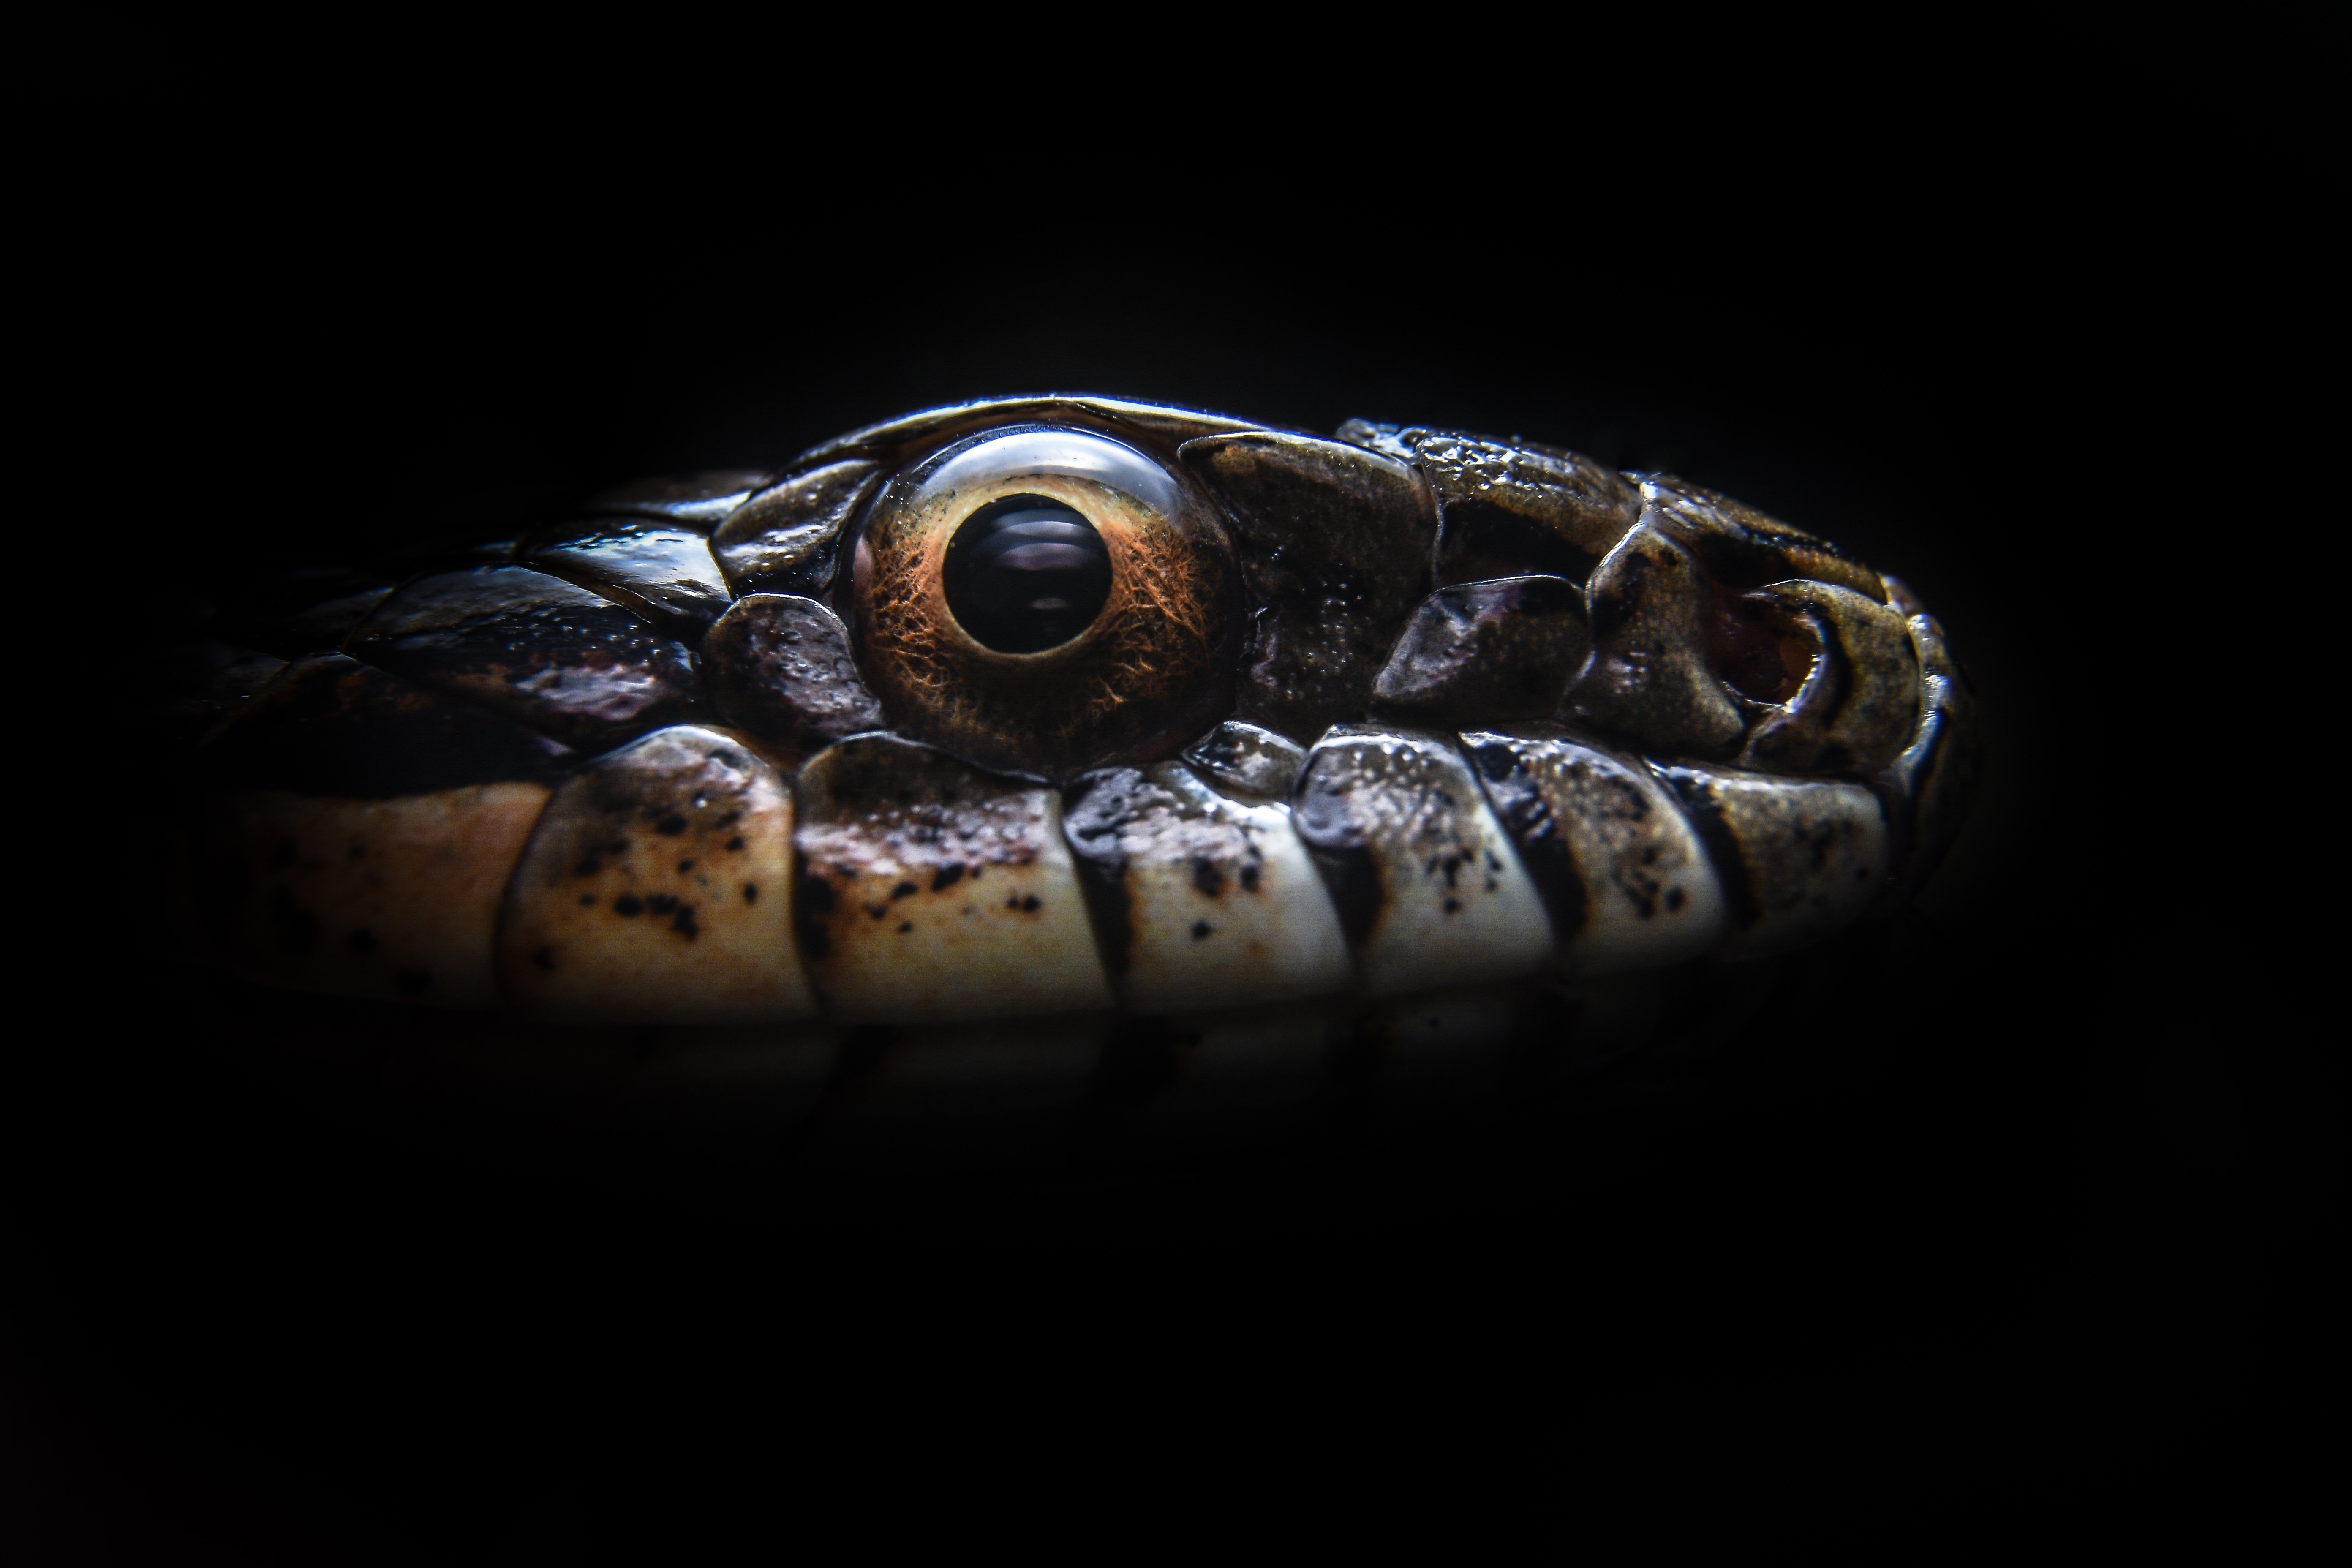 узорчатый полоз, глаз змеи, голова змеи, Elaphe dione, рептилия, пресмыкающиеся, Ксения Соварцева